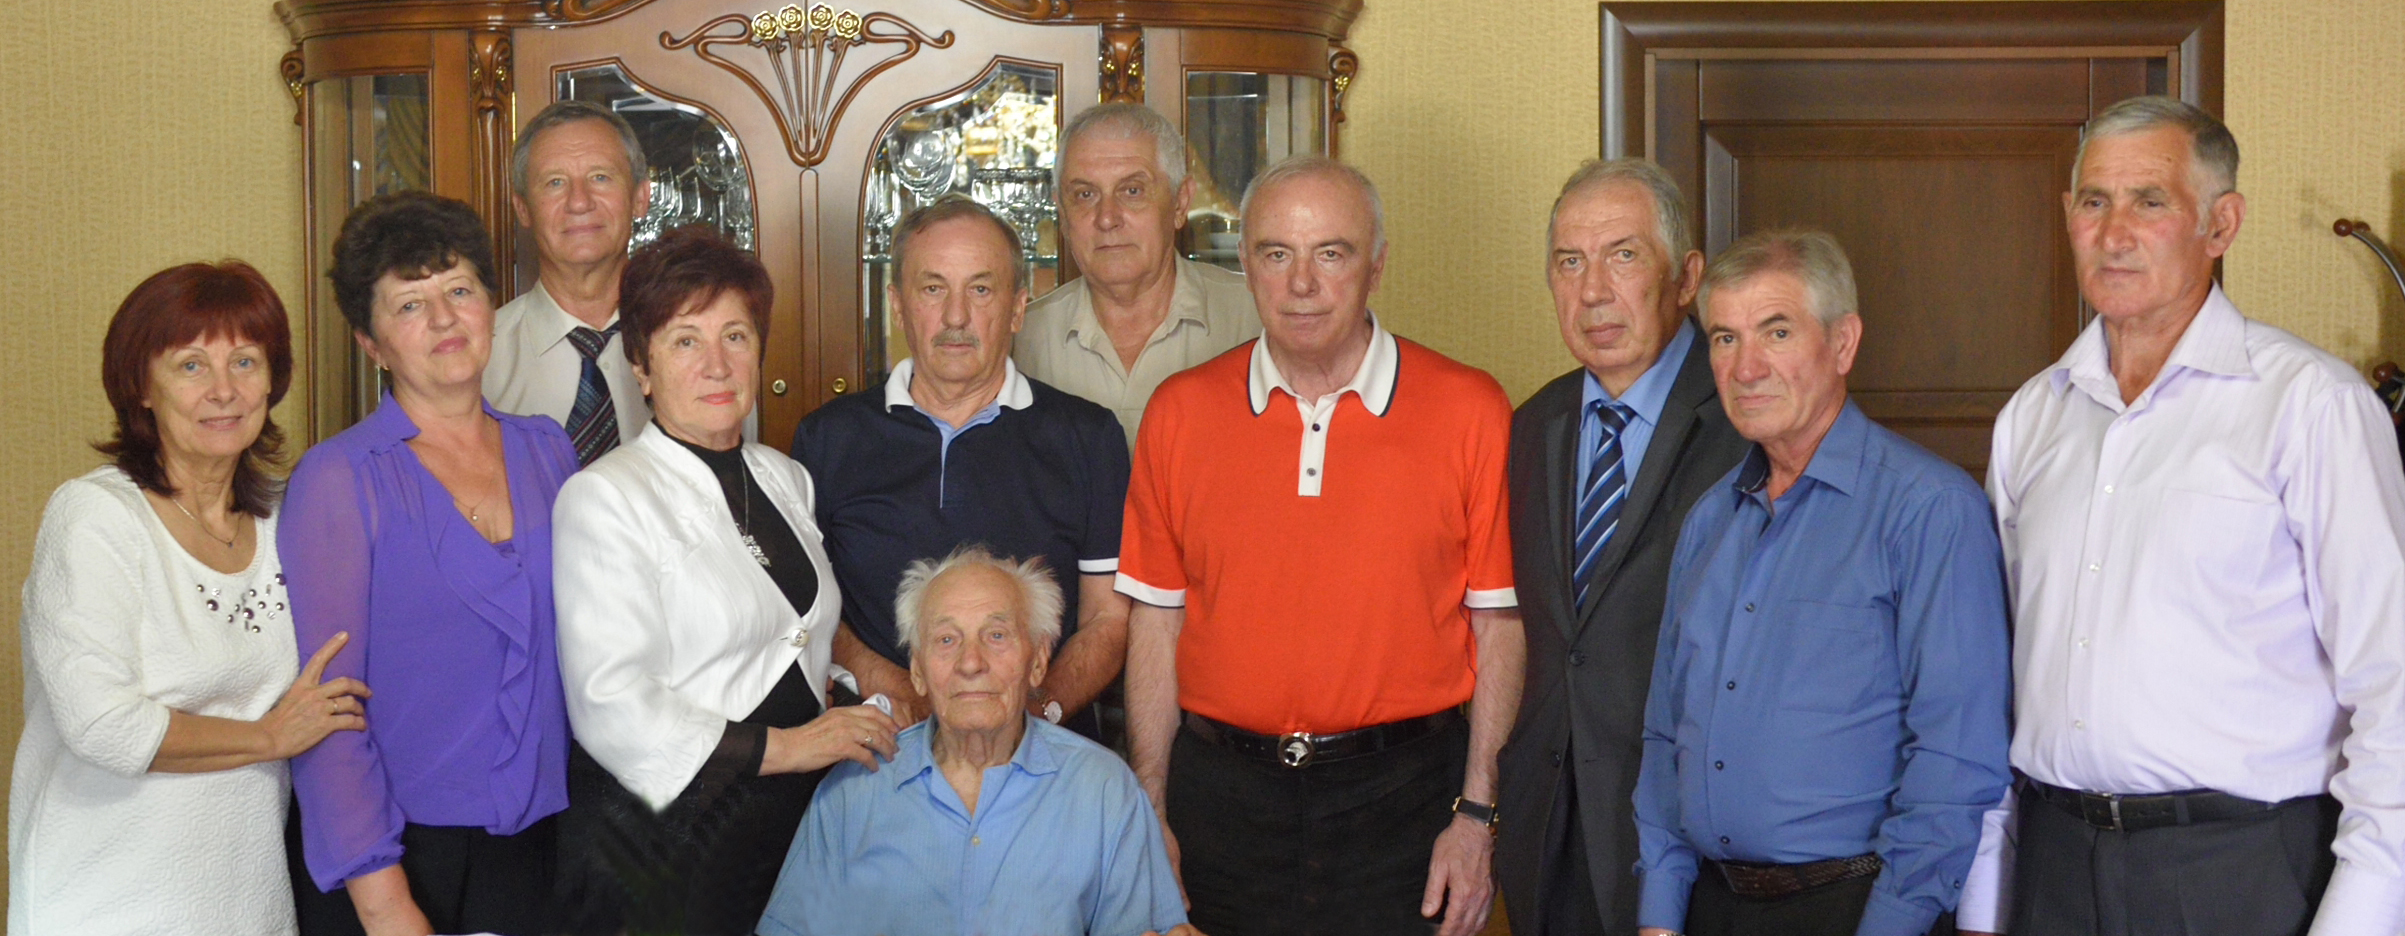 Глава Адыгеи организовал встречу ветеранов спорта, игроков волейбольной команды «Буревестник»